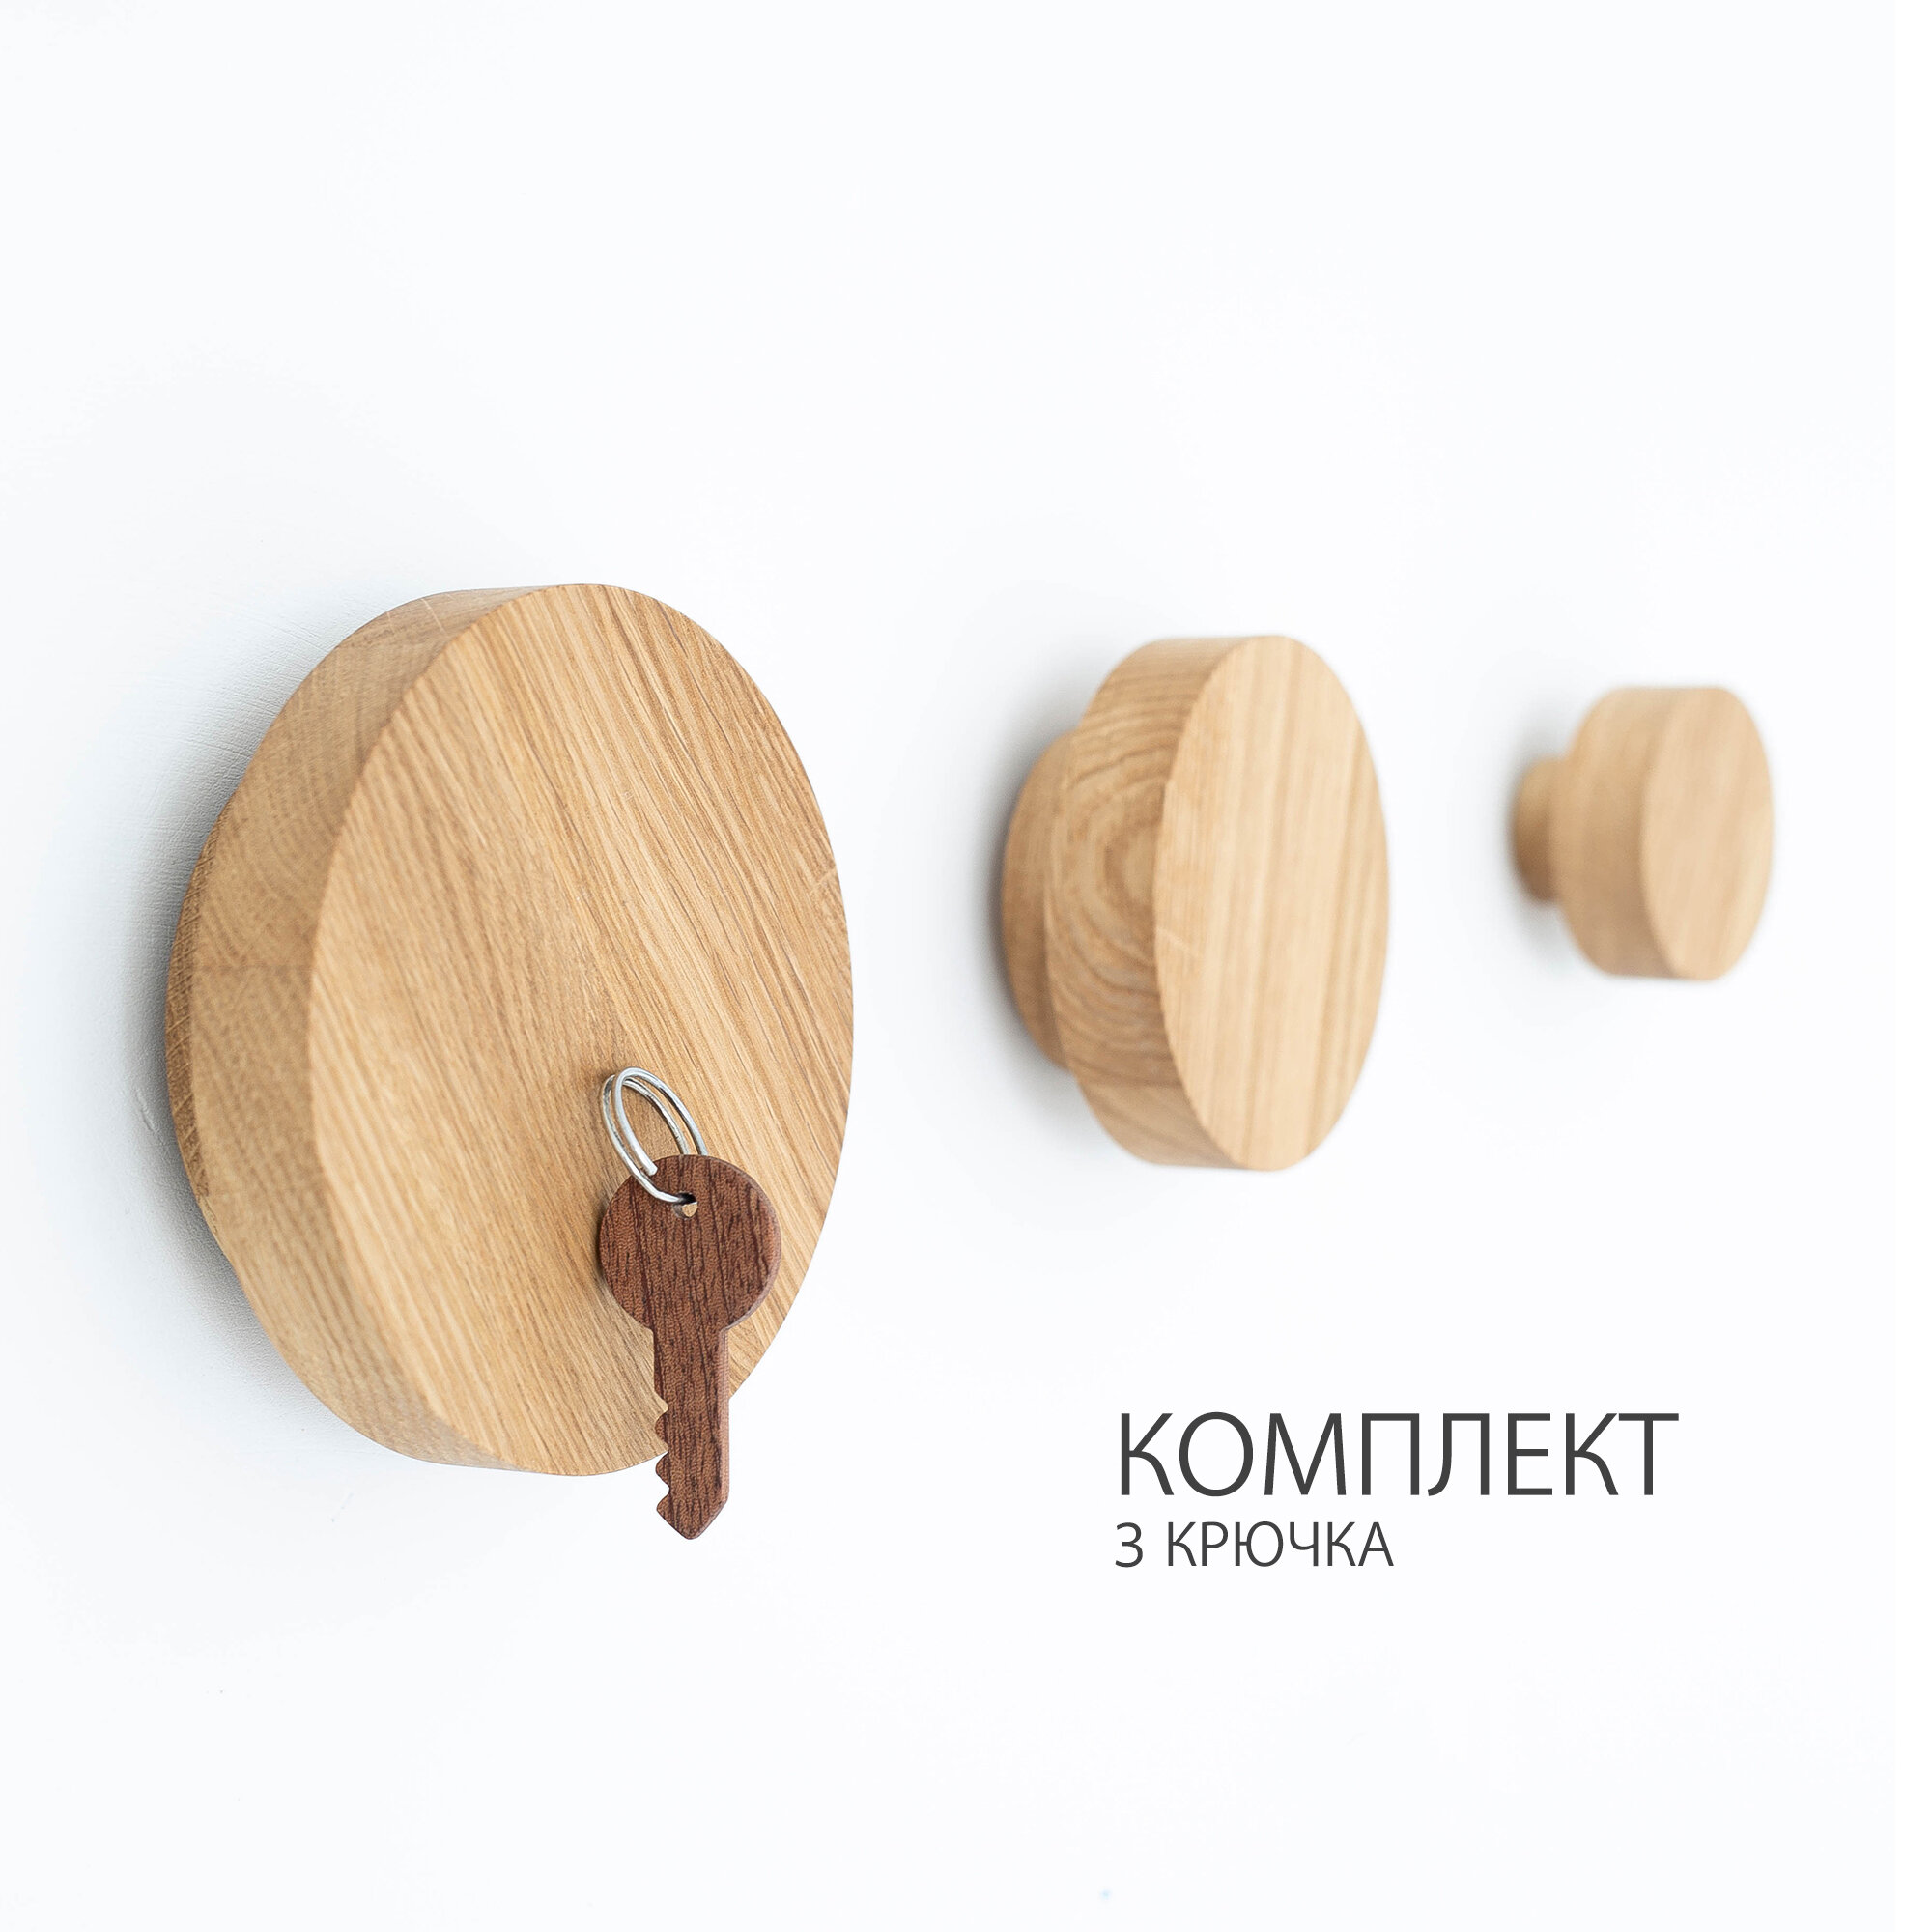 Настенный крючок из дерева комплект 3 шт. разных диаметров для прихожей, гостиной, загородного дома.